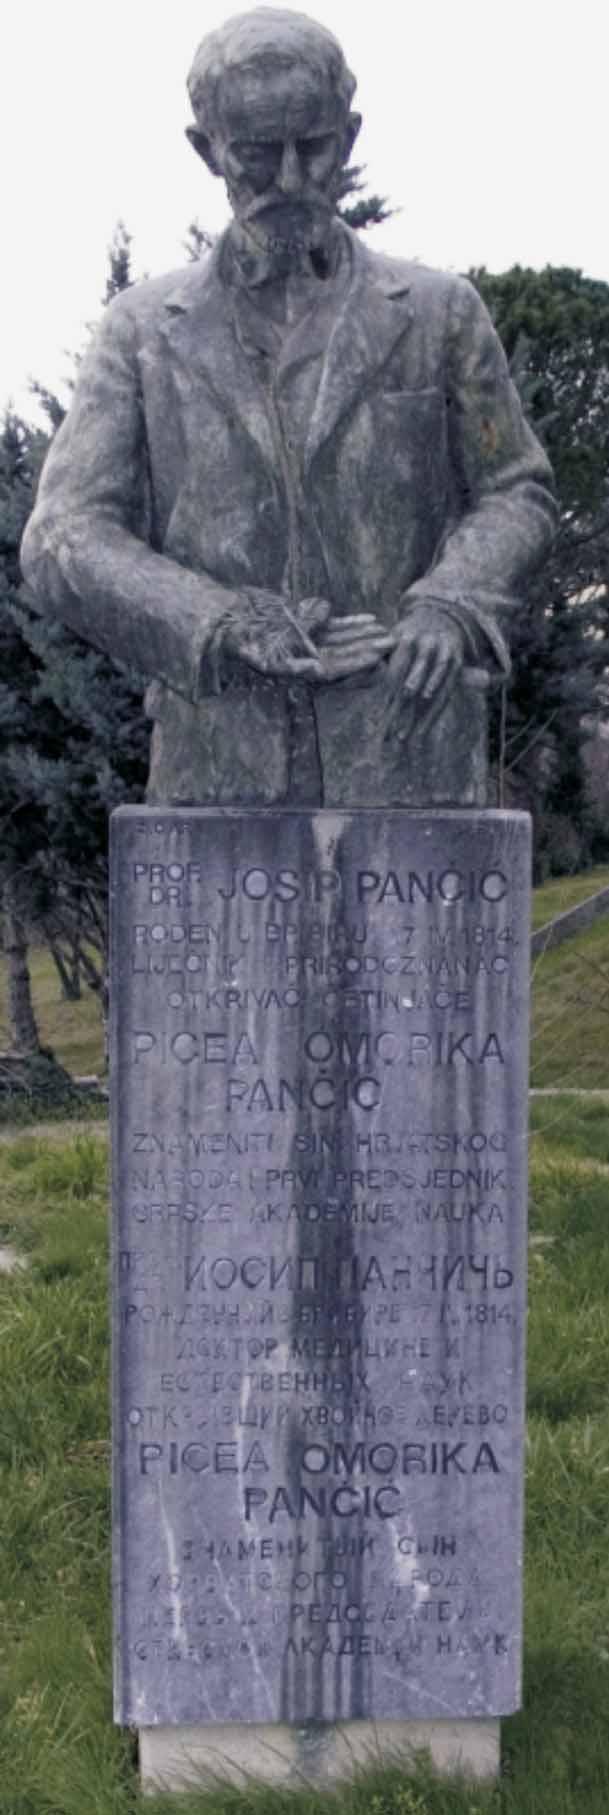 68 ŠUMARSKI LIST, 1 2, CXXXVIII (2014) Slika 1. Spomenik prof. dr. Josipu Pančiću u Crikvenici na kojemu piše: "Rođen u Bribiru 17. IV. 1814.